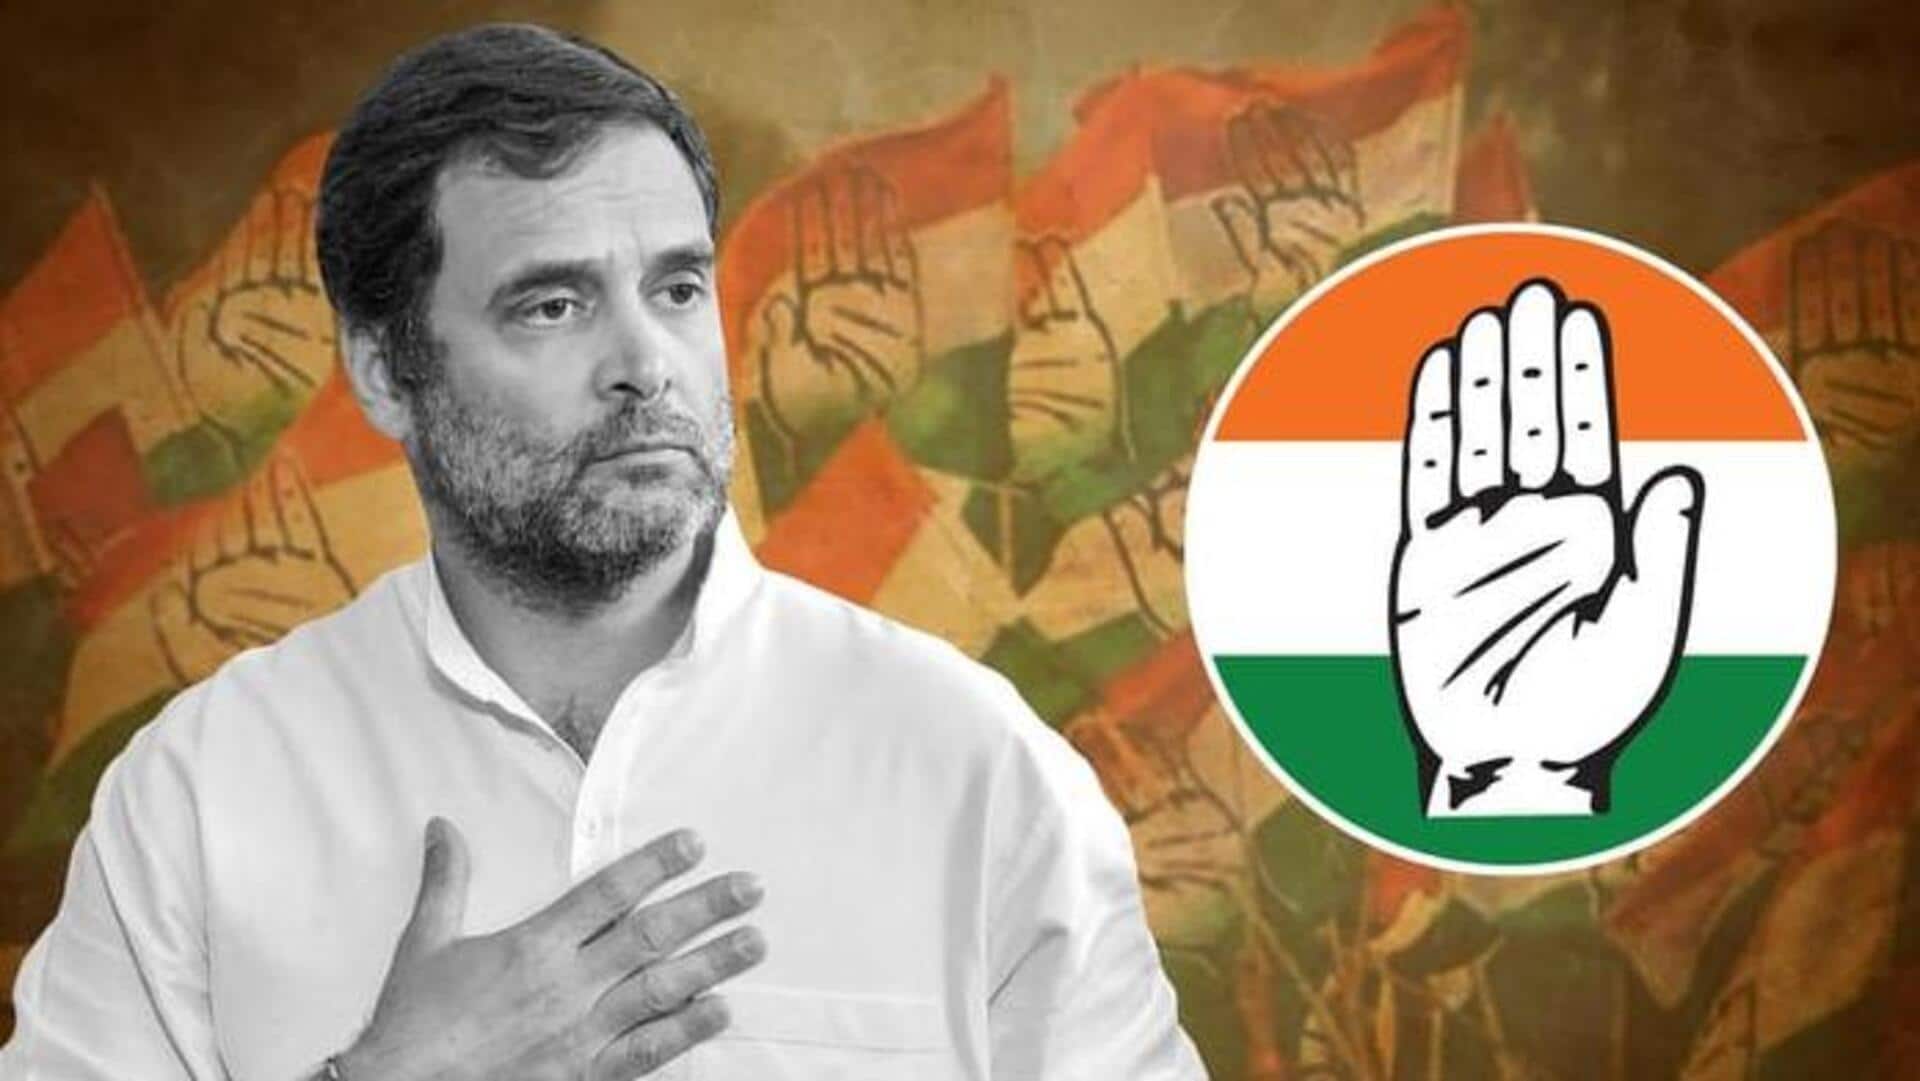 Rahul Gandhi targets BJP over farmer loans in Chhattisgarh